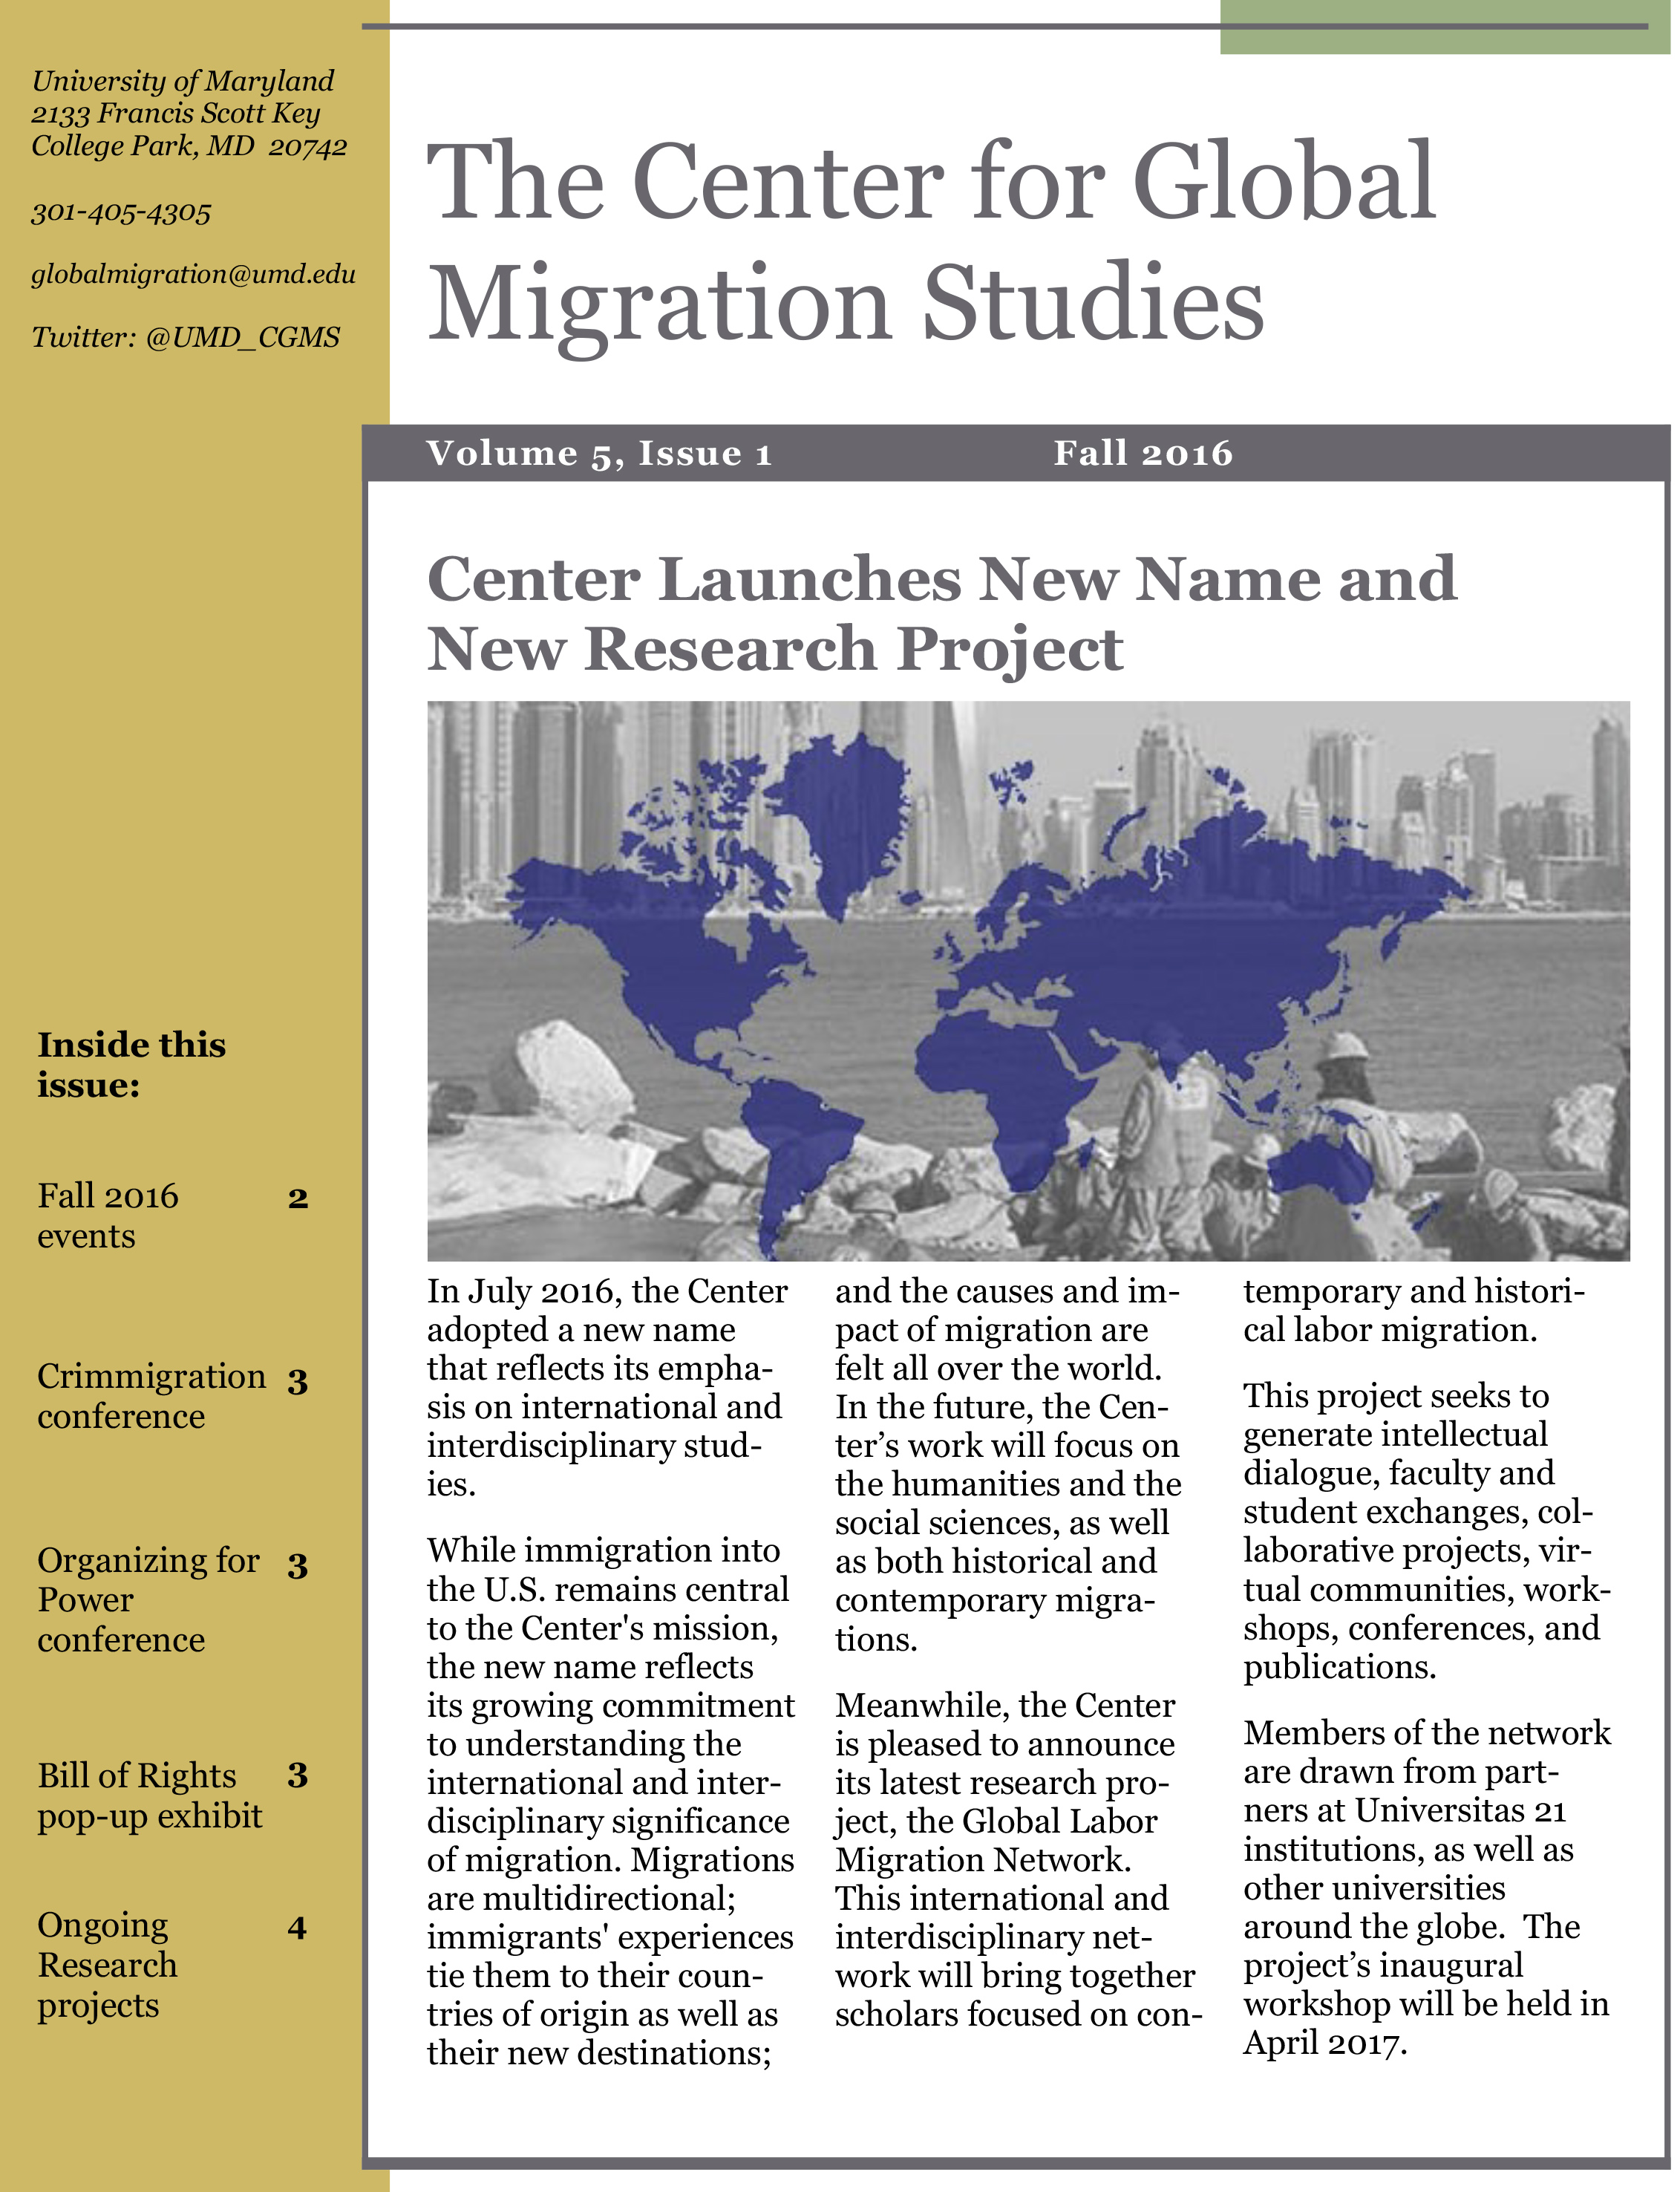 Center for Global Migration Studies Newsletter Fall 2016